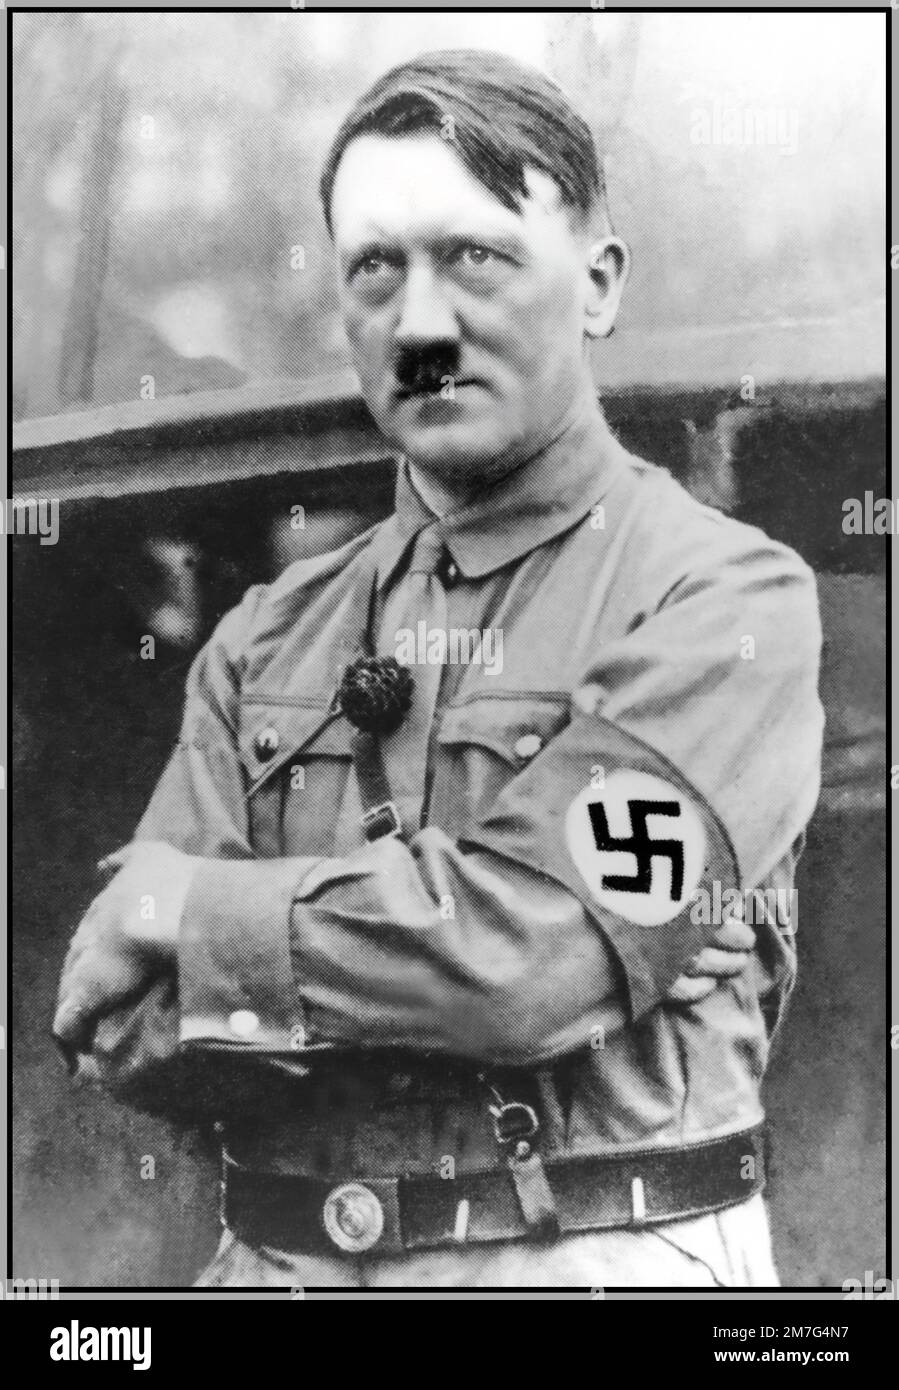 ARCHIVIO 1932 Adolf Hitler NSDAP in uniforme SA indossando una fascia da braccio swastika in occasione di un raduno politico per decidere le elezioni presidenziali del Reich Hitler divenne successivamente Cancelliere della Germania. L'ascesa al potere. 1930s Germania nazista Foto Stock